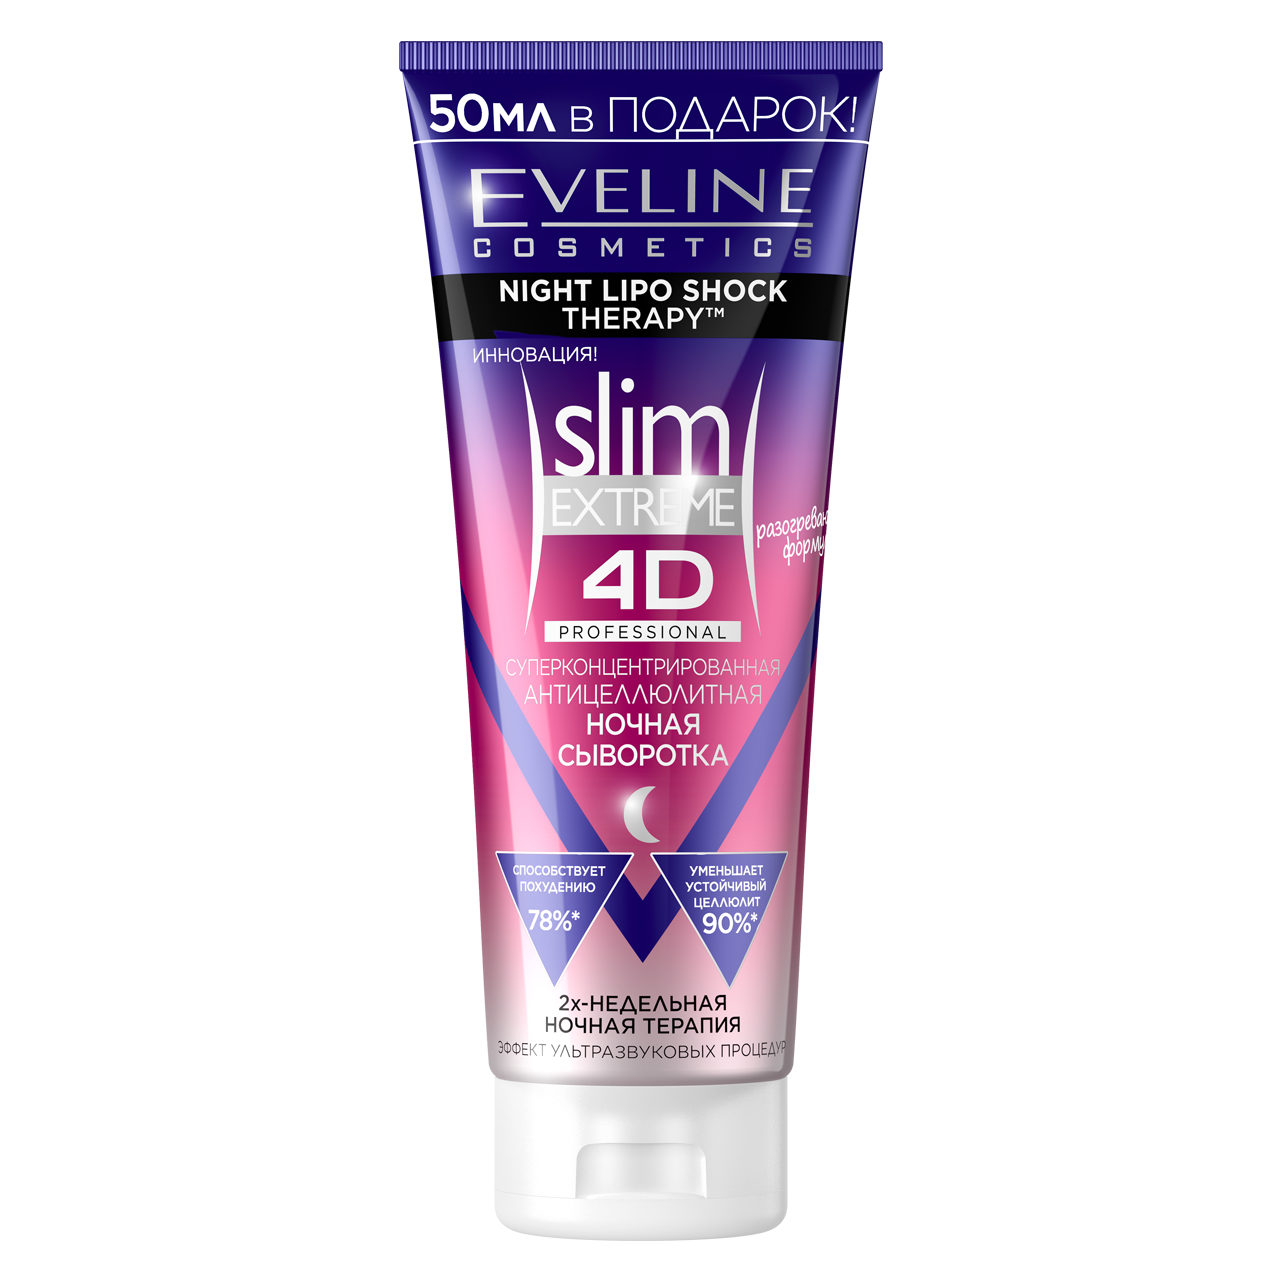 Сыворотка для тела Eveline Cosmetics Slim Extreme 4D, ночная, антицеллюлитная, 250мл